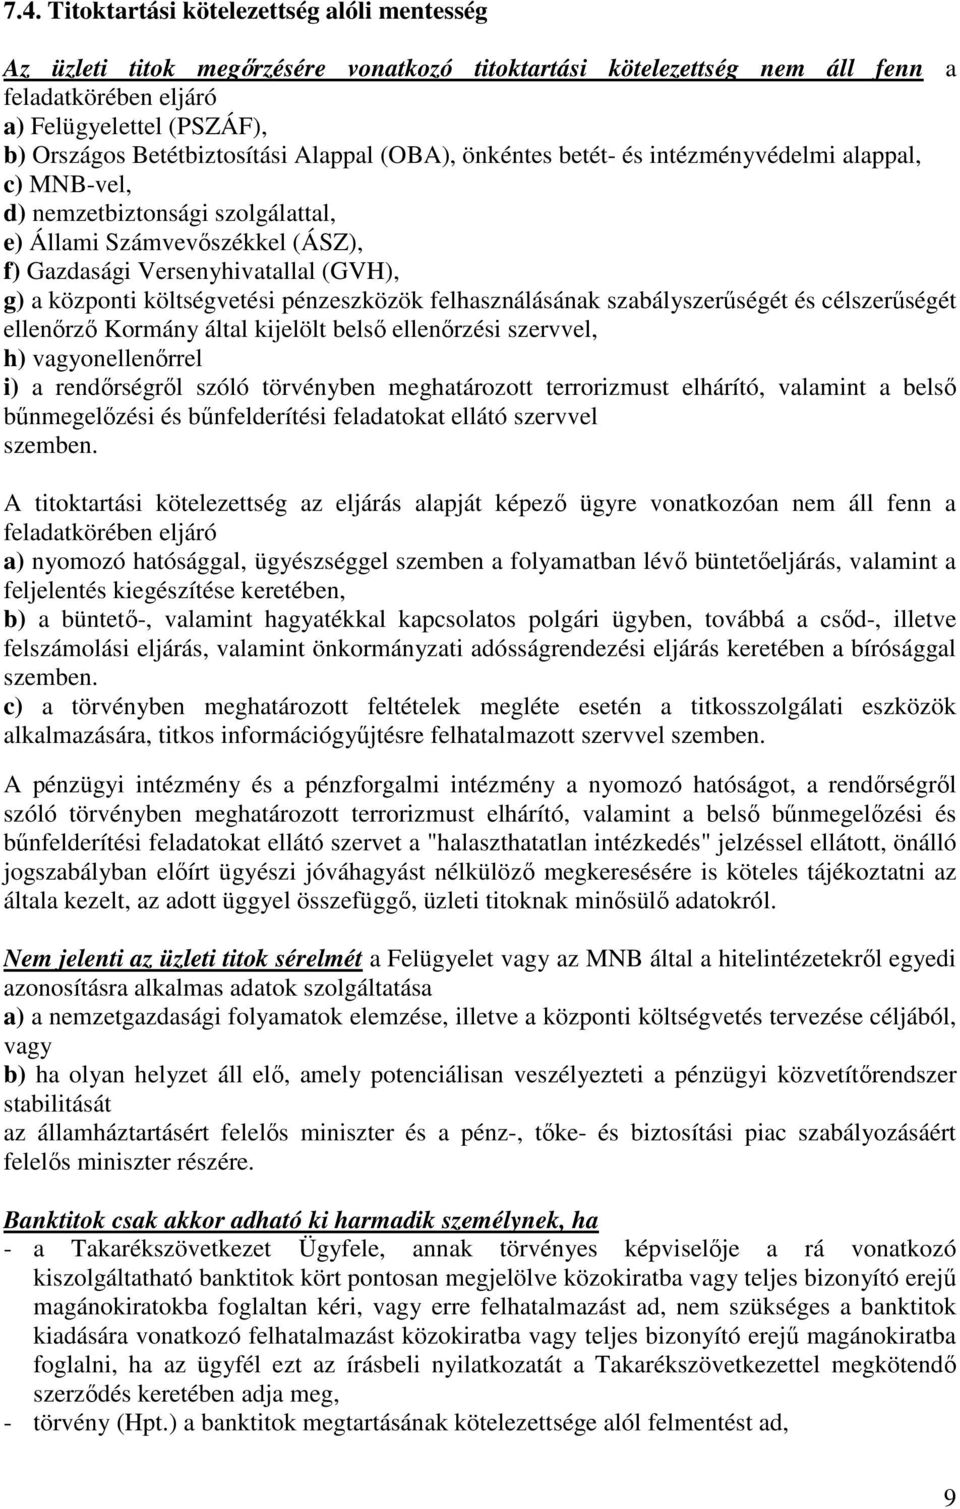 központi költségvetési pénzeszközök felhasználásának szabályszerűségét és célszerűségét ellenőrző Kormány által kijelölt belső ellenőrzési szervvel, h) vagyonellenőrrel i) a rendőrségről szóló